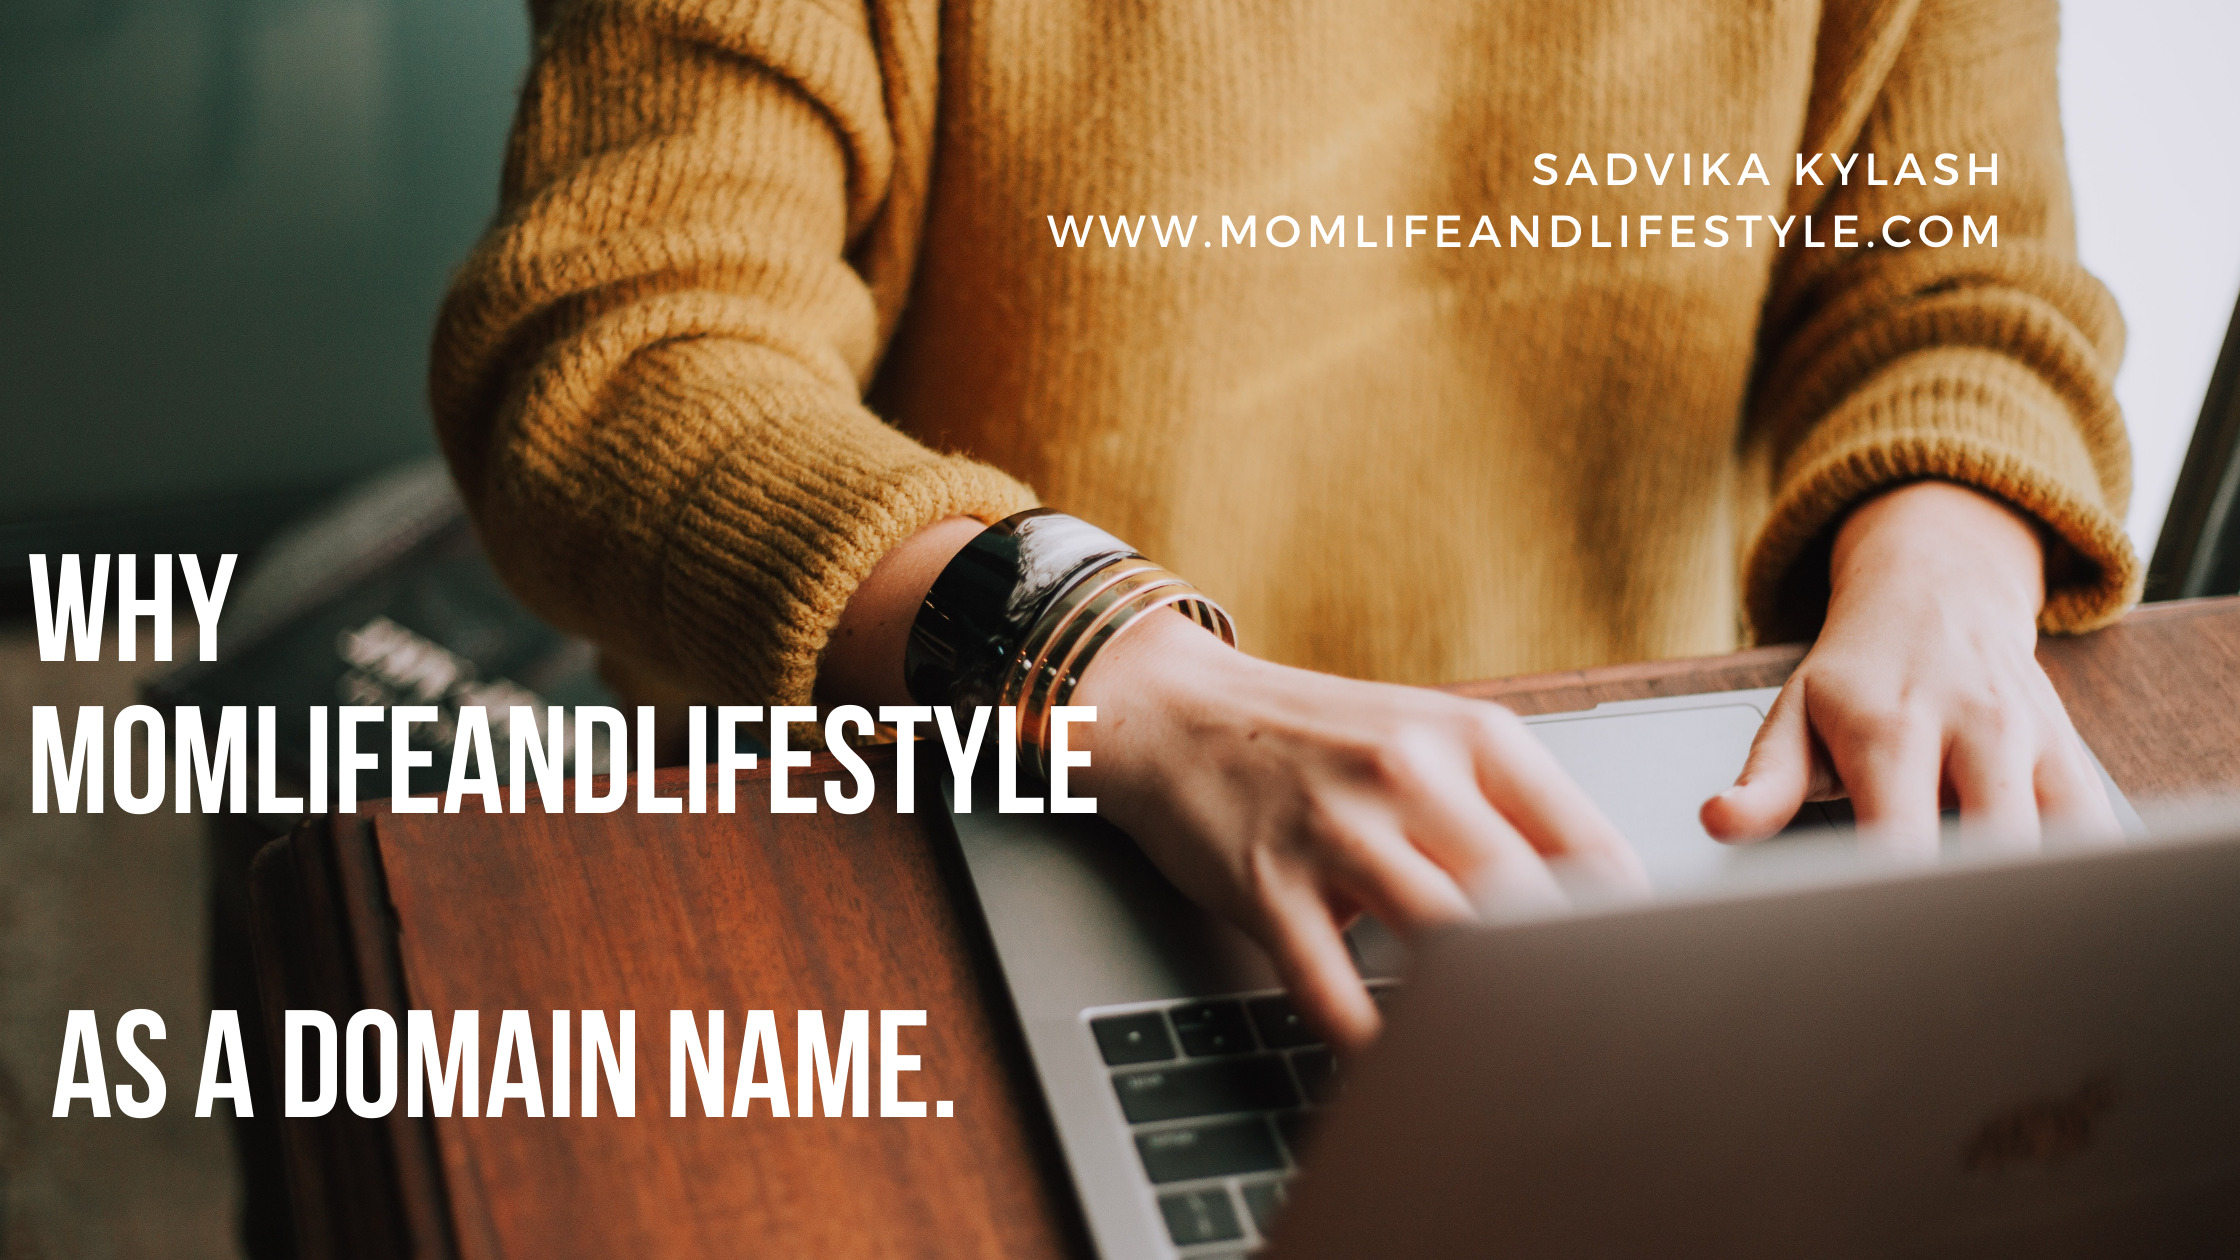 Momlifeandlifestyle as my domain name